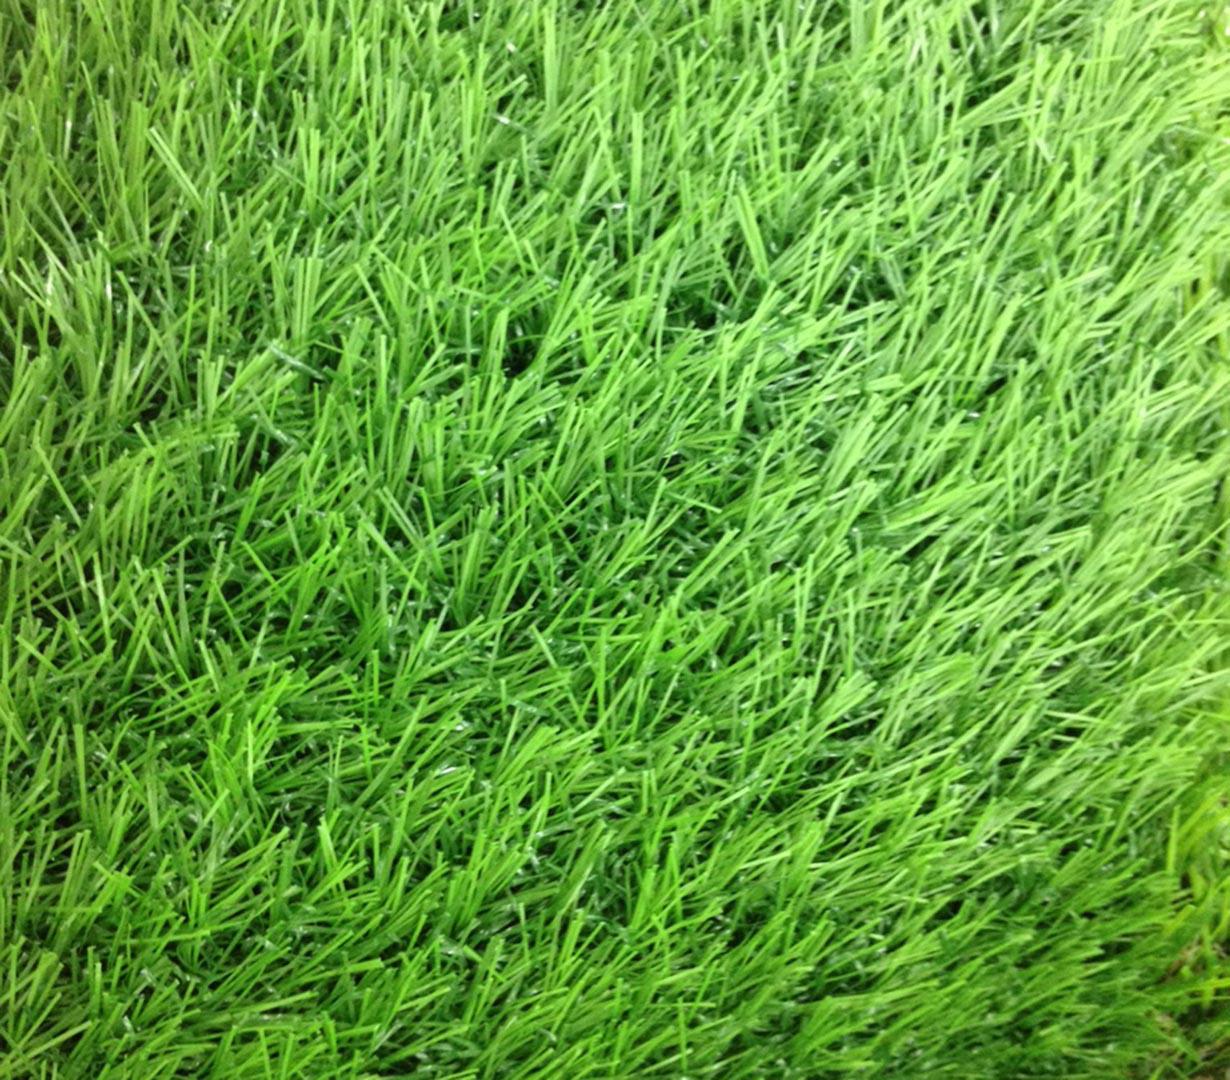 หญ้าเทียม อีซี่กราส เอสซีจี เซฟวิ่งกราส รุ่นสั่งตัด ความยาวเส้นหญ้า 2.5 ซม. สี ฟอเรส กรีน